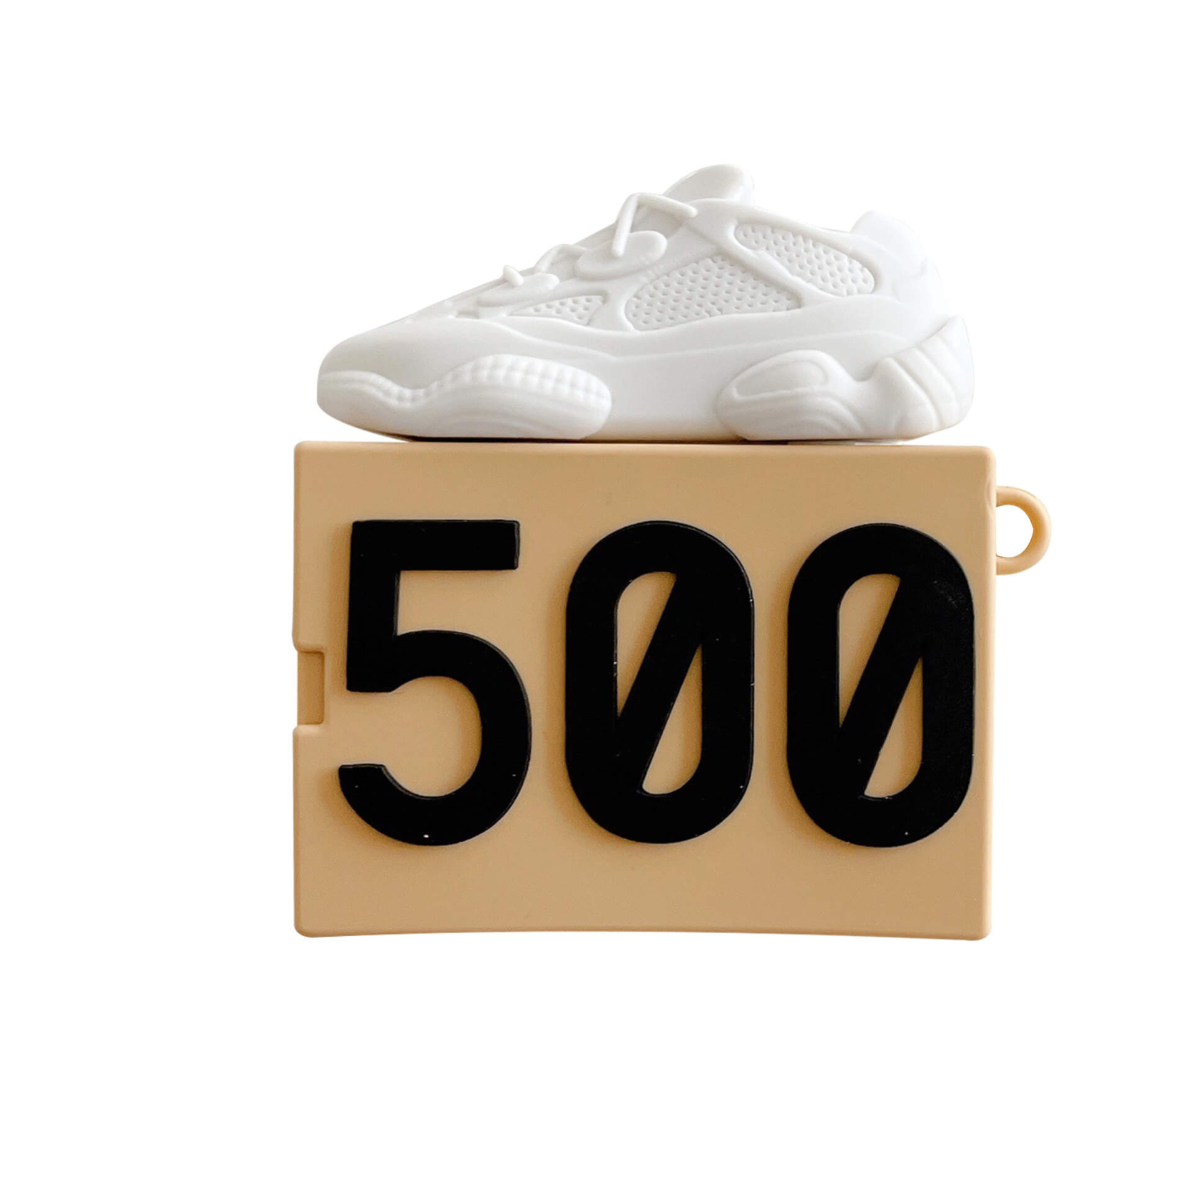 #12025 500 Shoe Box Case